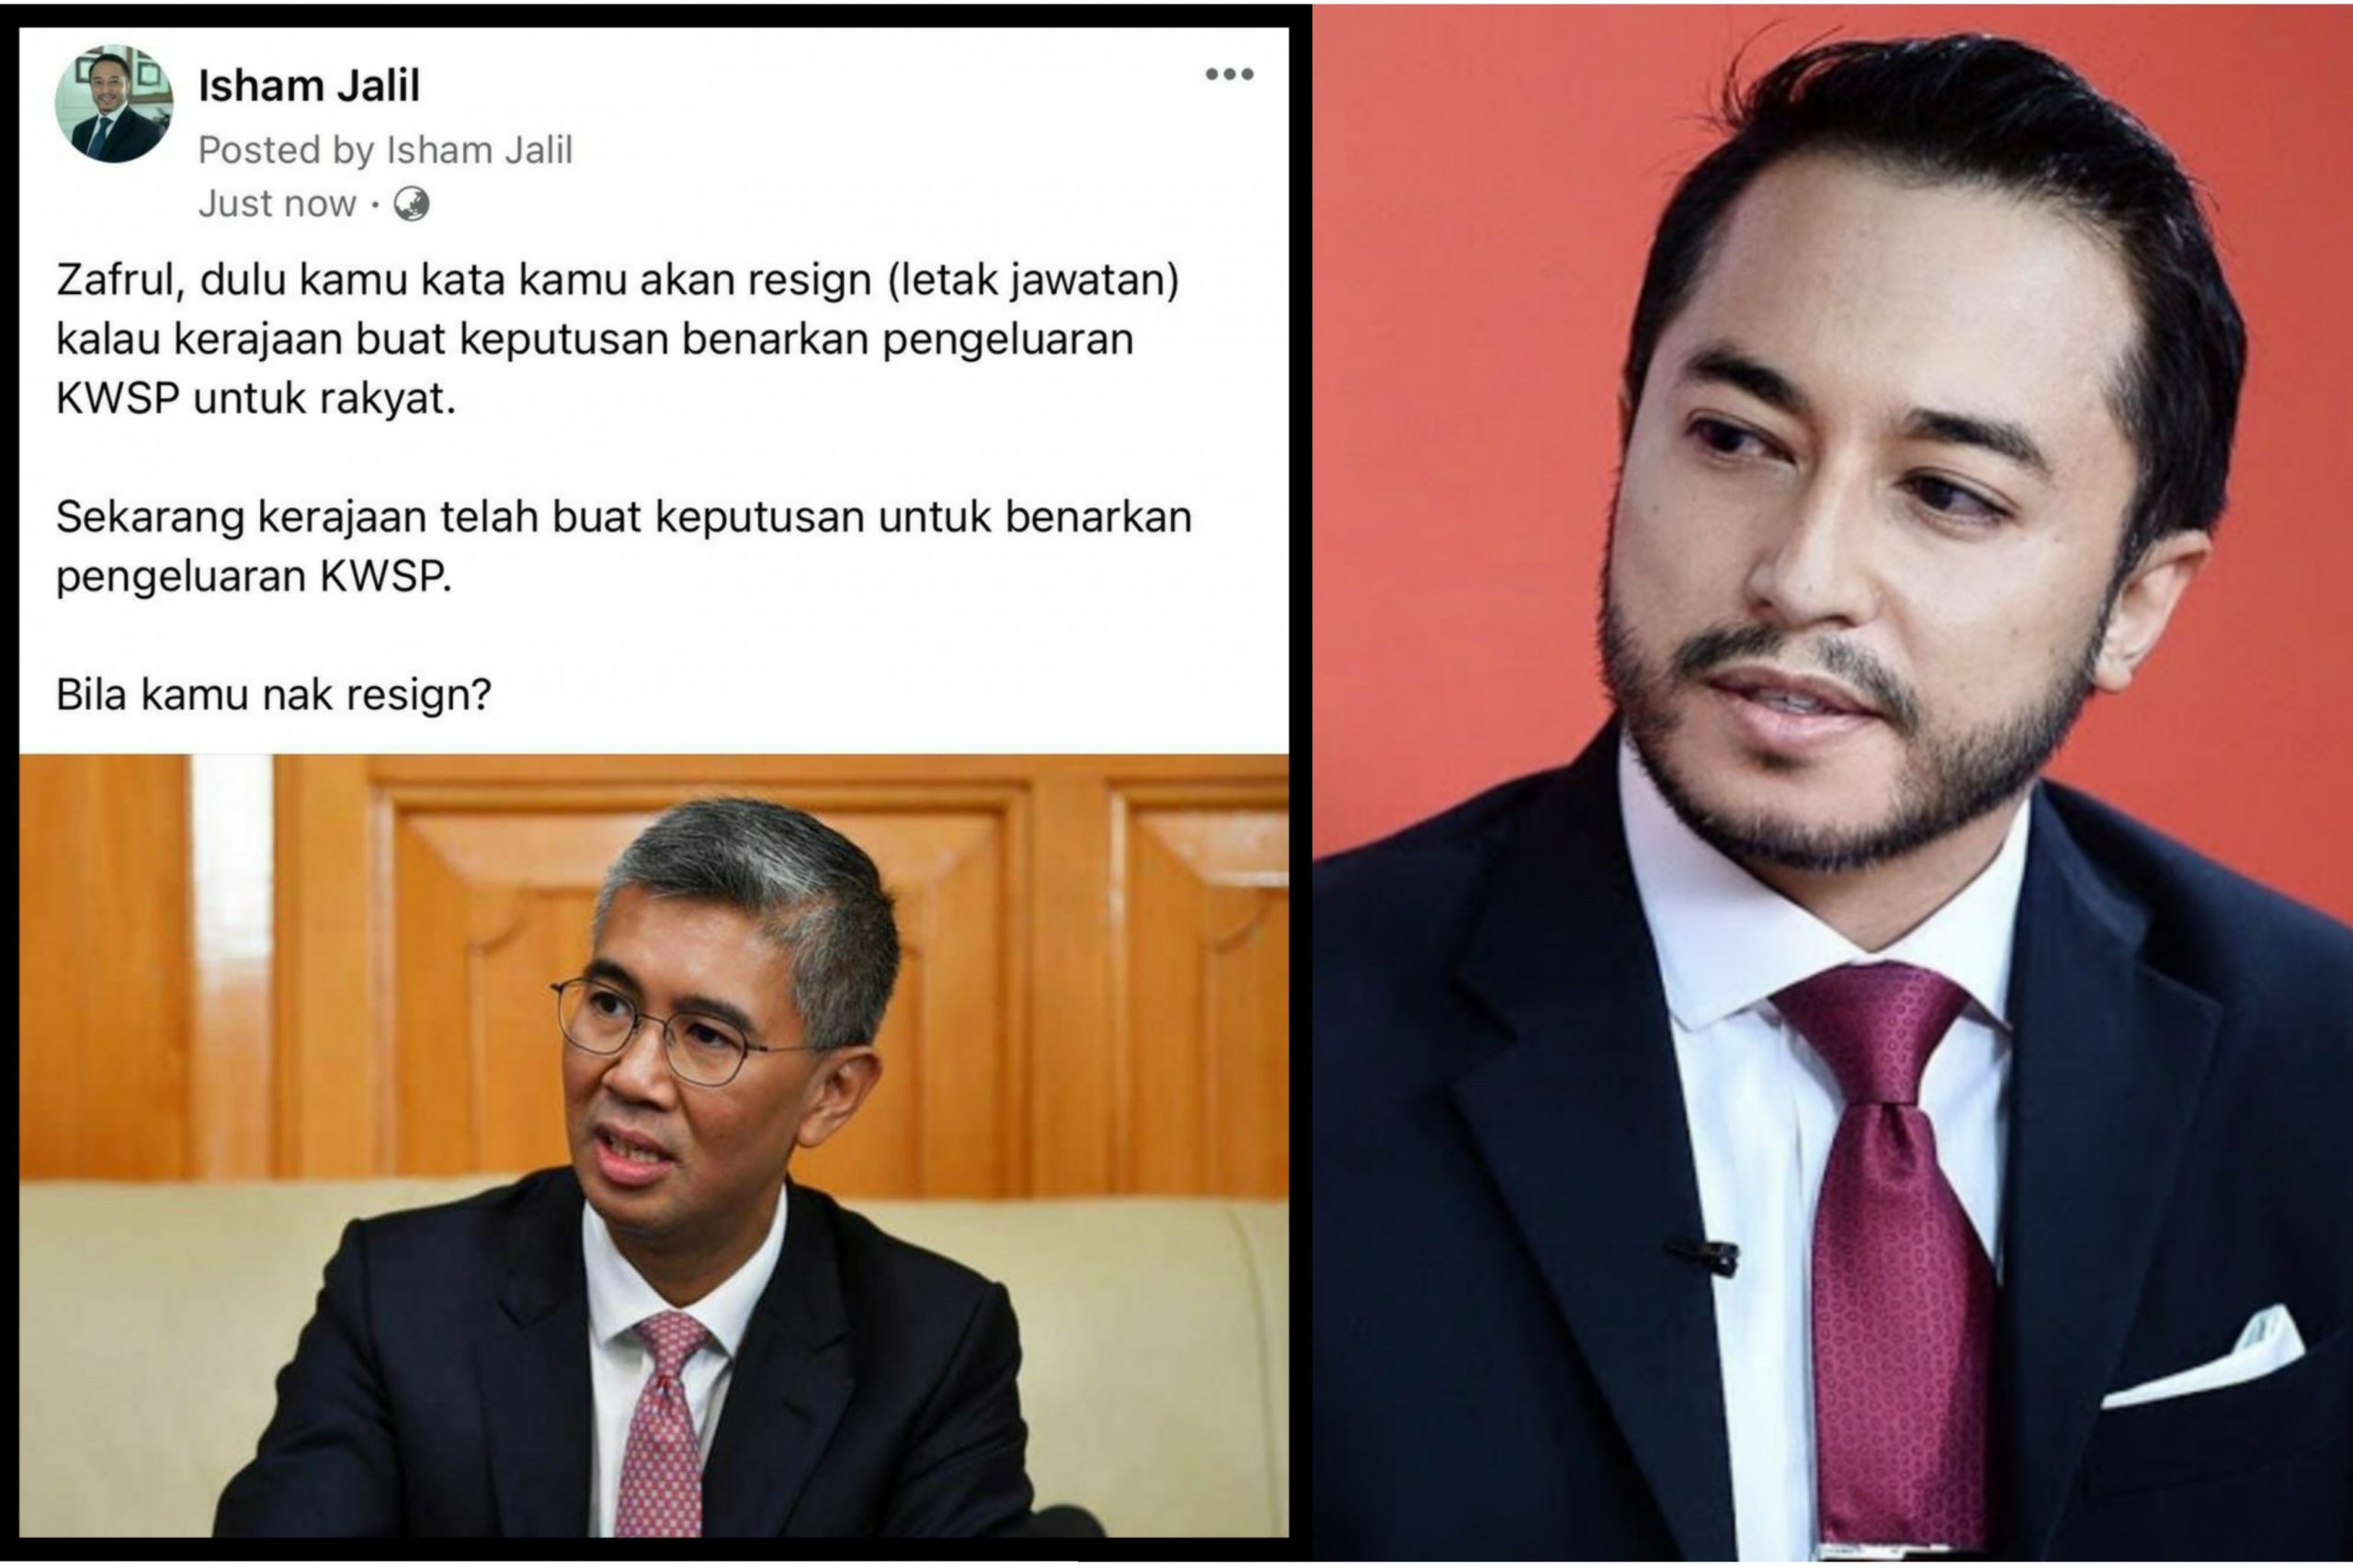 Jawatan letak menteri malaysia kewangan Perdana Menteri